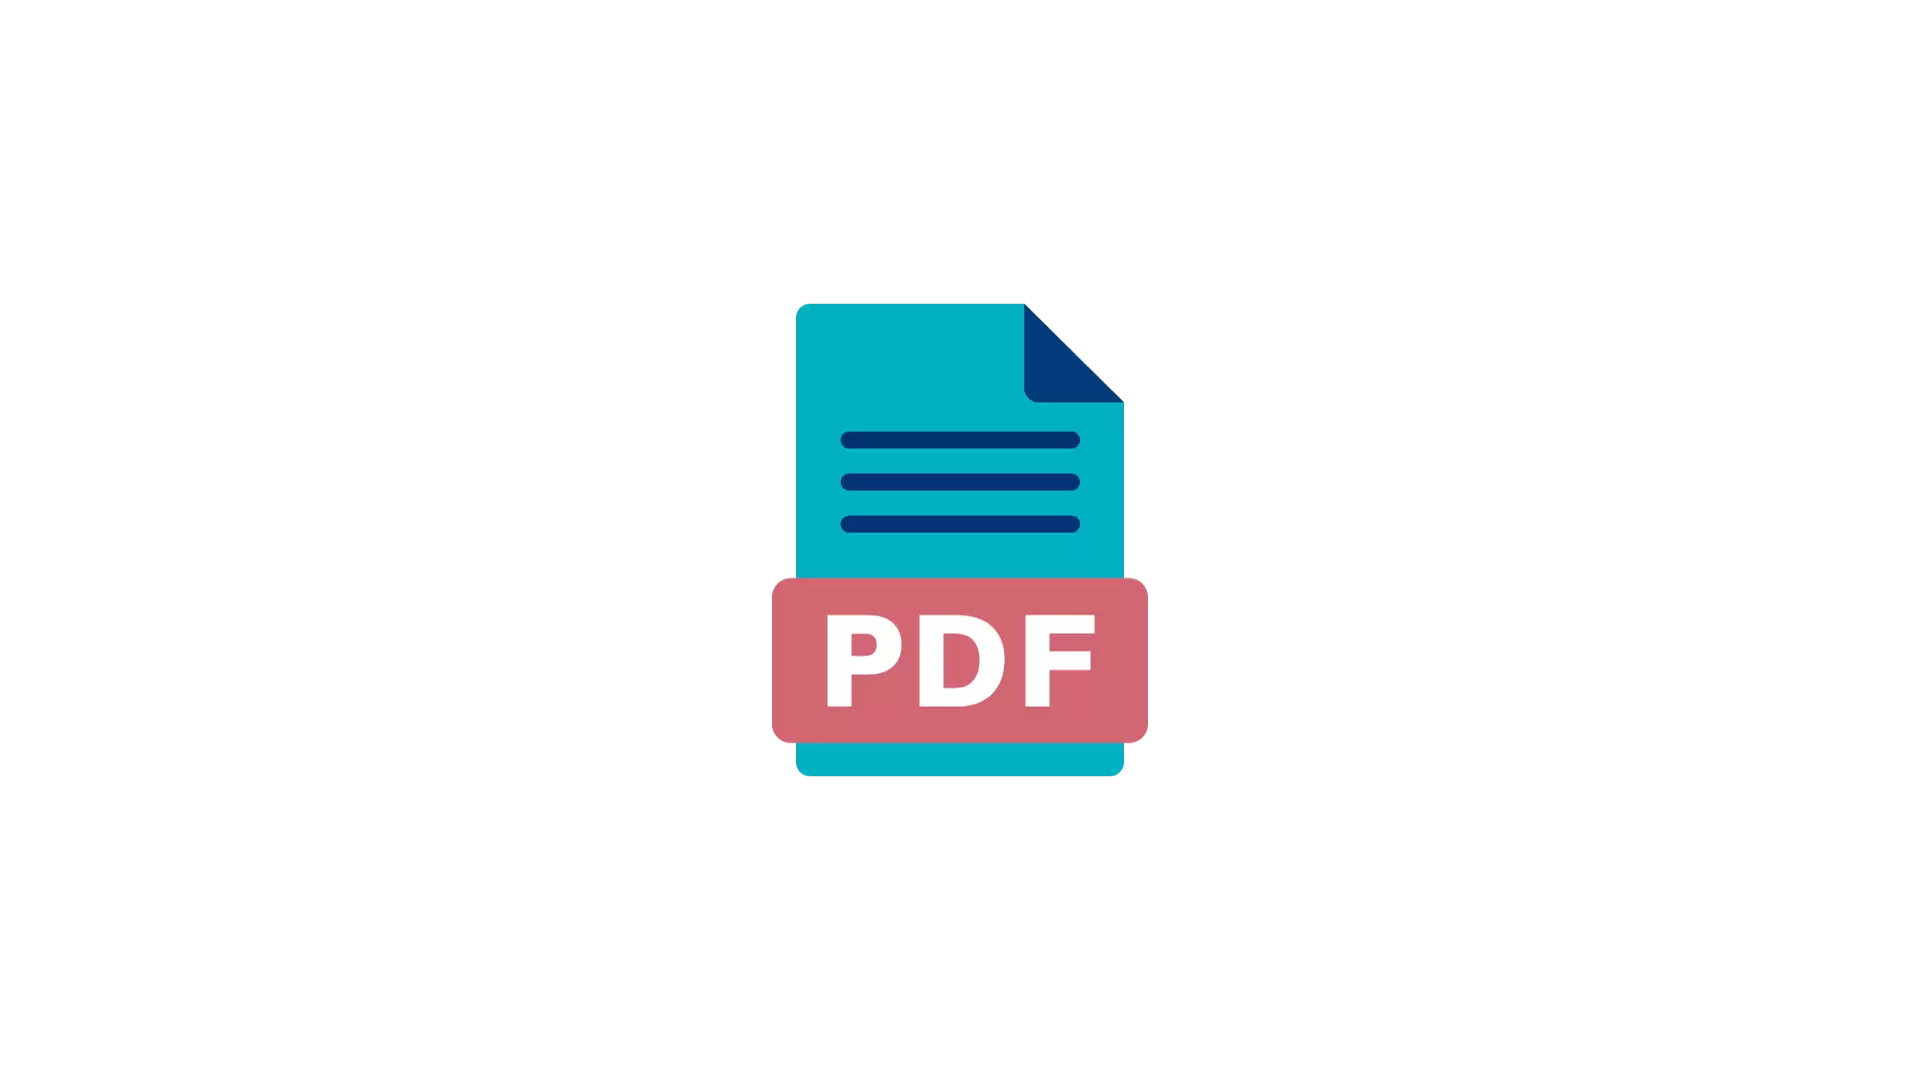 Pictogramme d'un coducment au format PDF/A